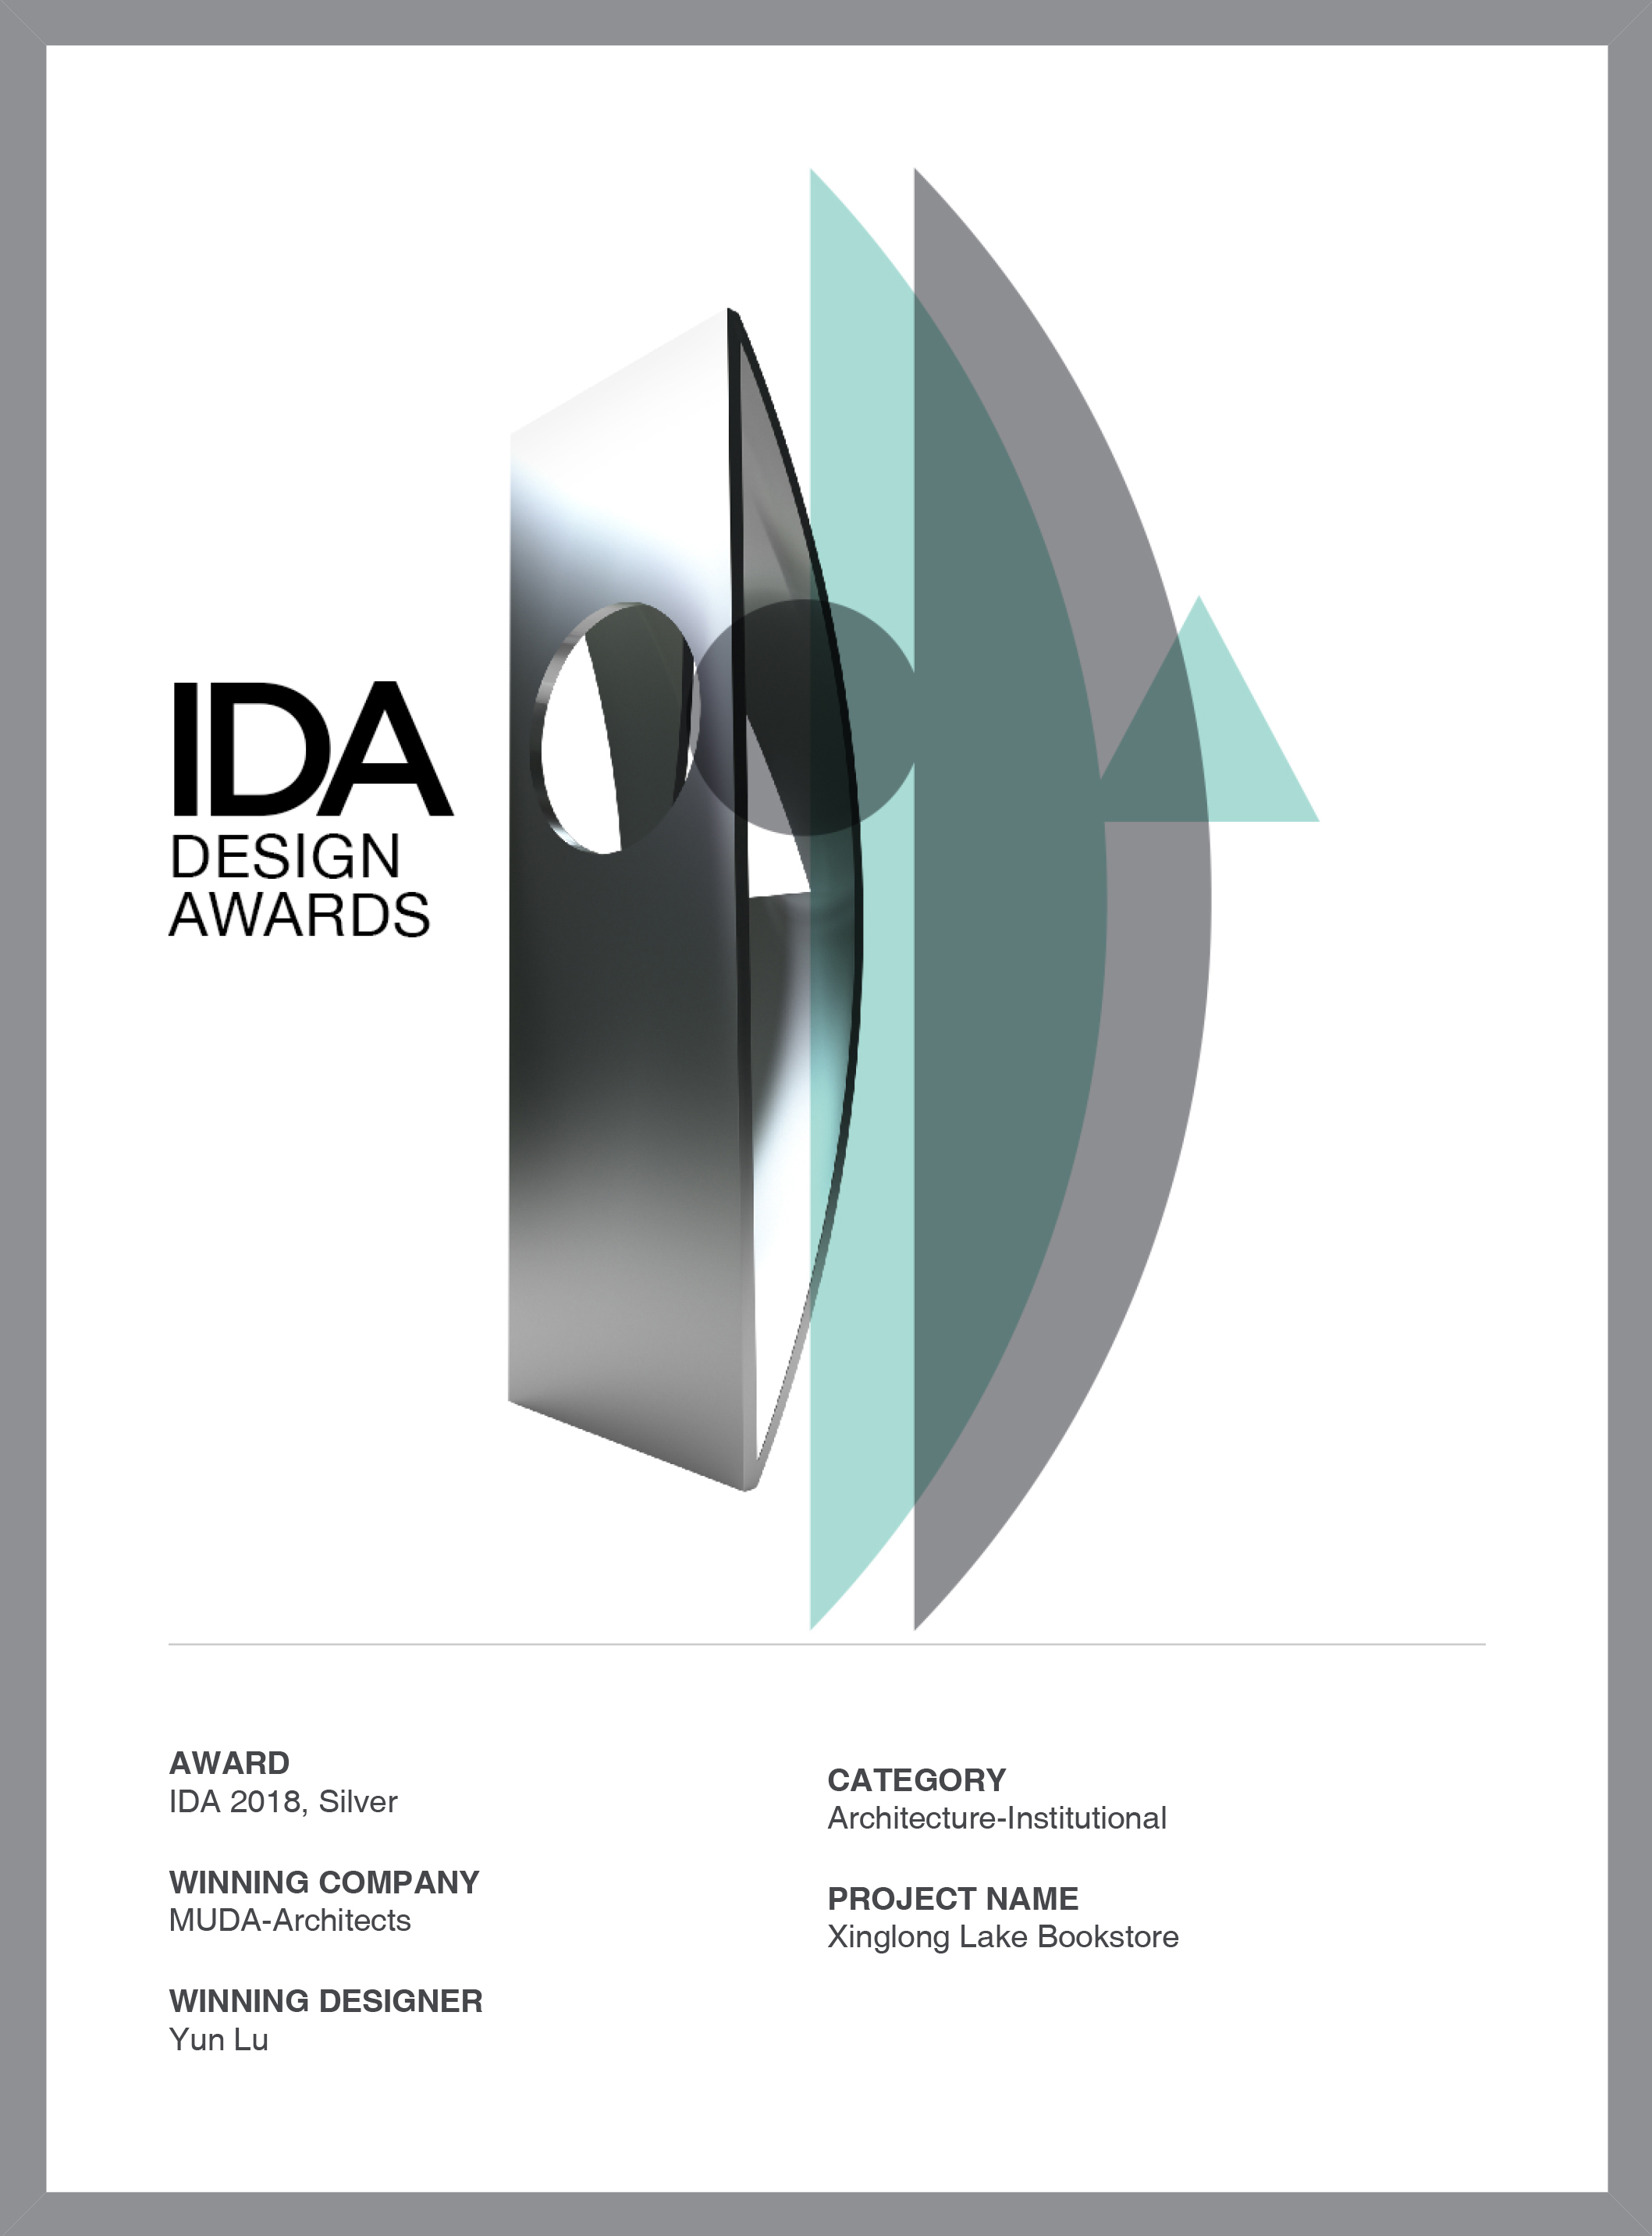 慕达建筑兴隆湖书店项目荣获美国IDA设计奖